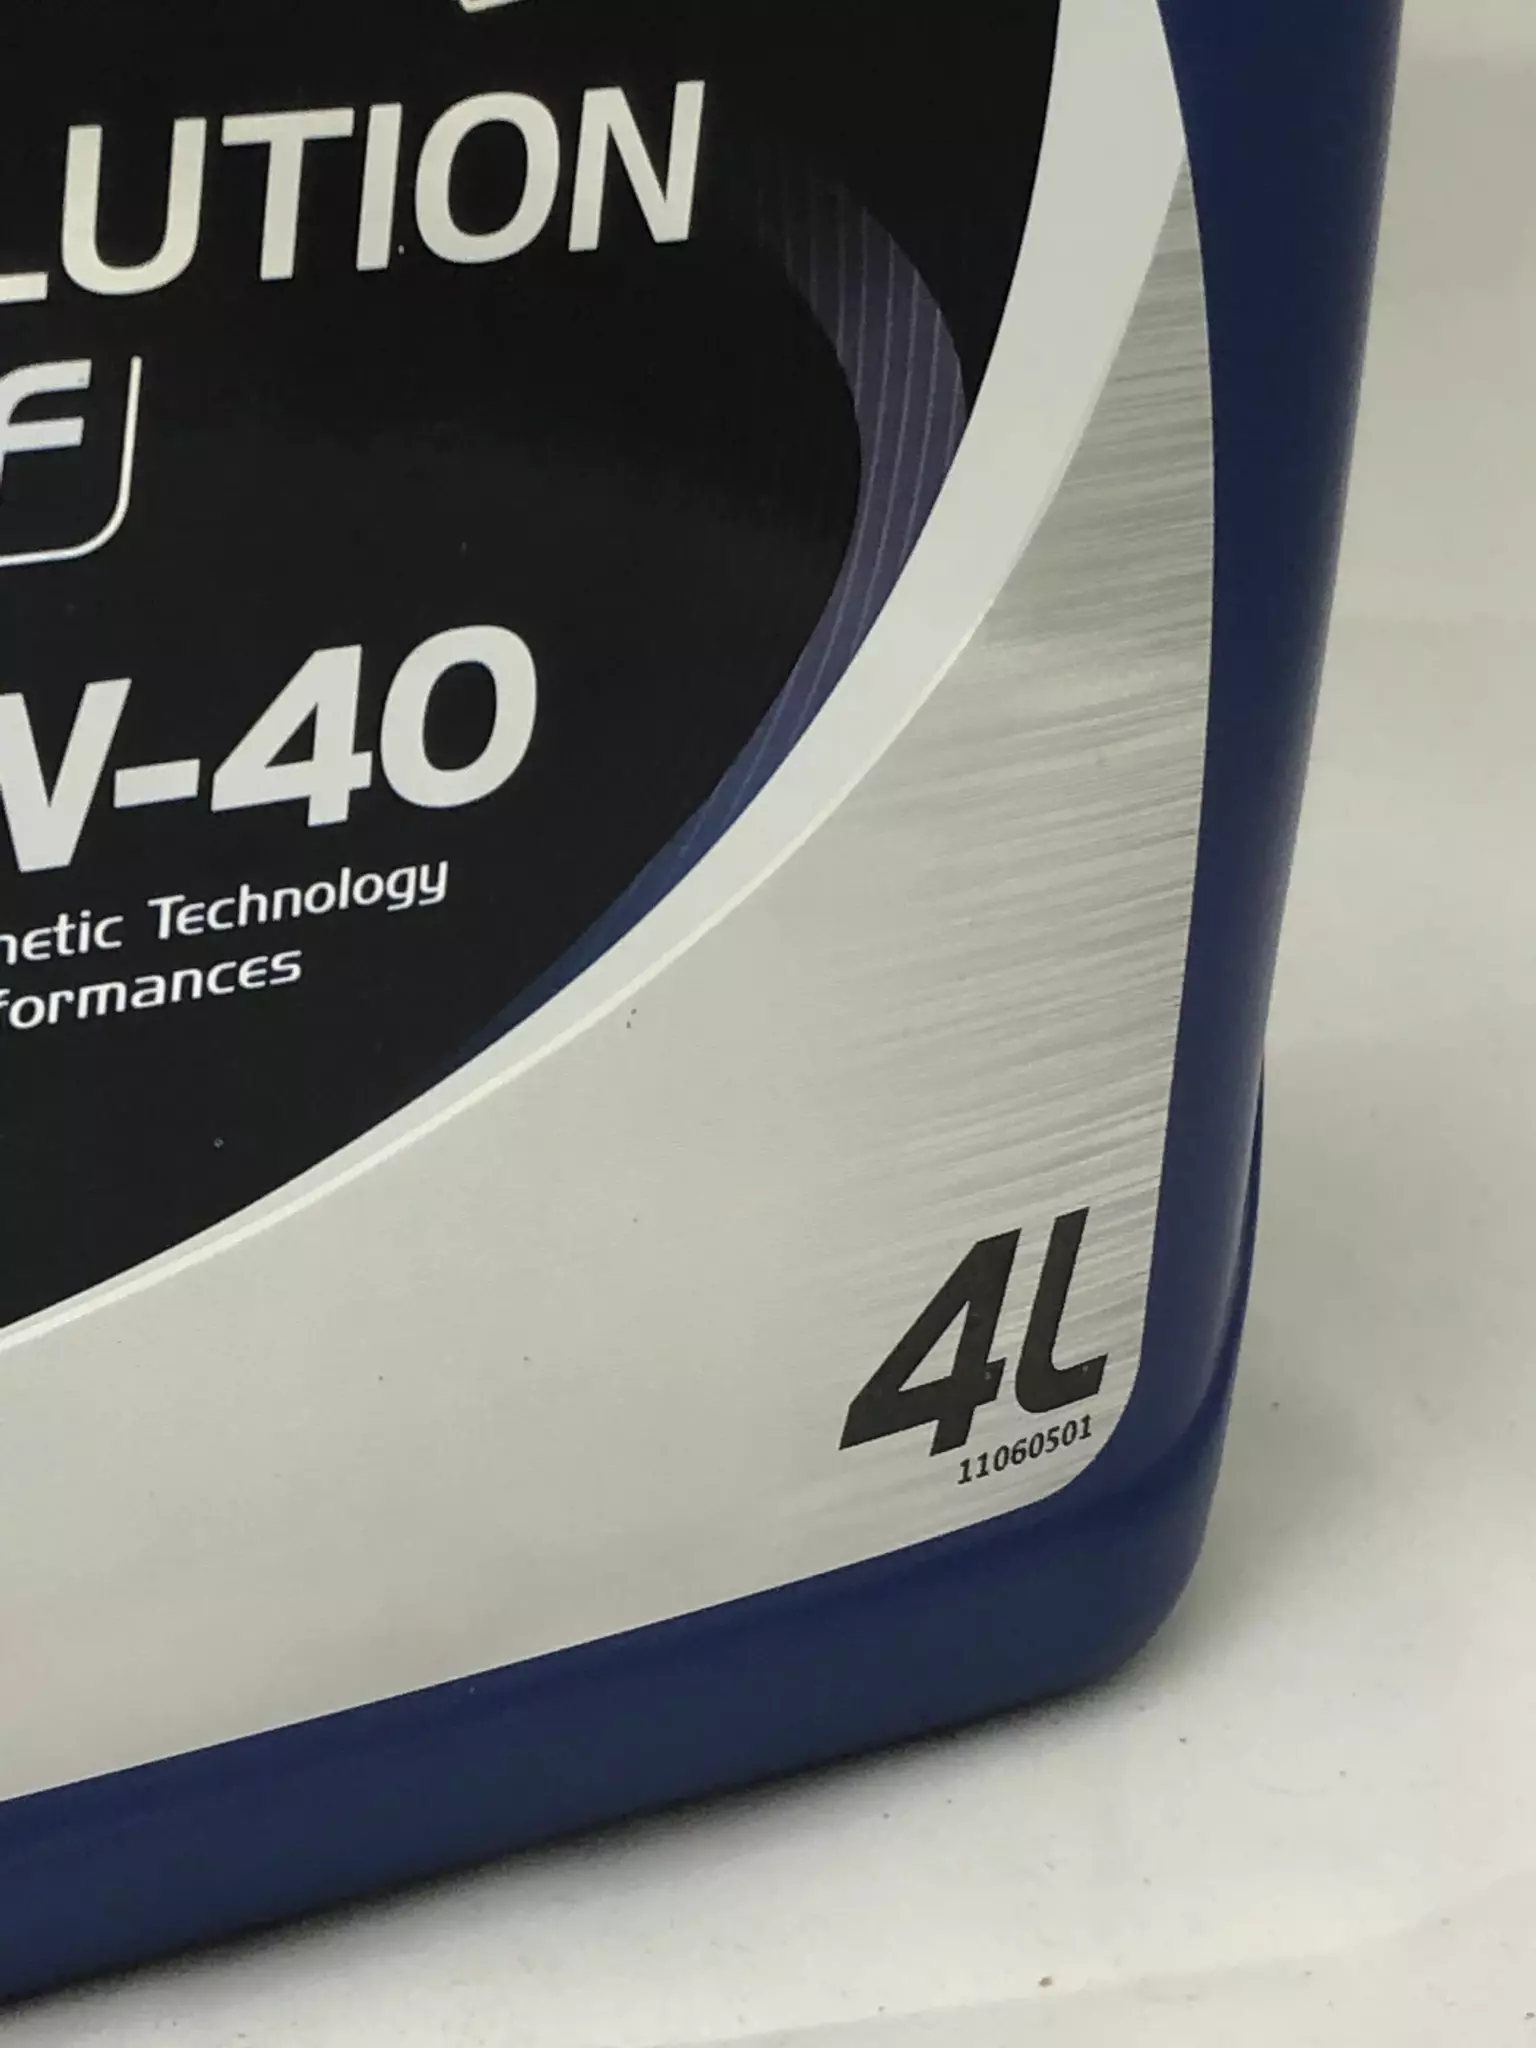 Синтетическое моторное масло ELF Evolution 900 NF 5W-40, 4 л, 4 кг